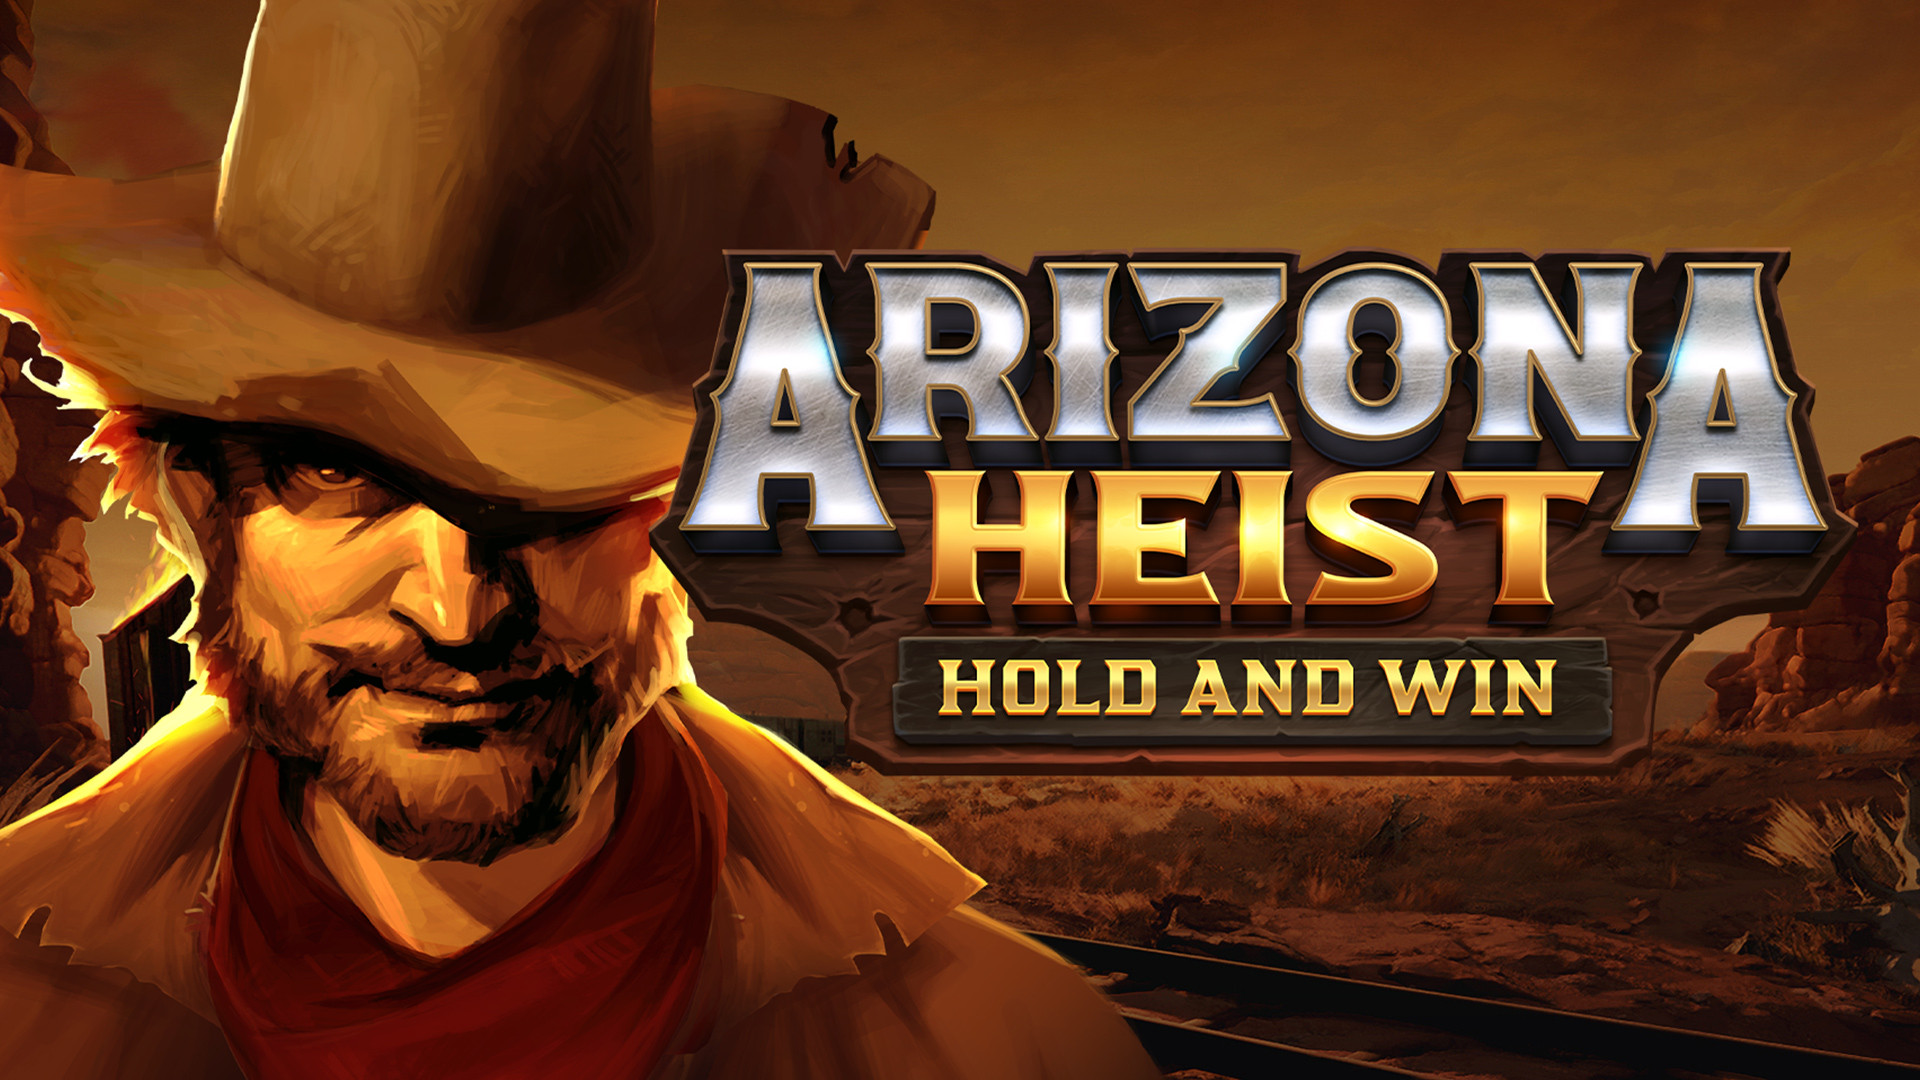 Arizona Heist: Hold and Win